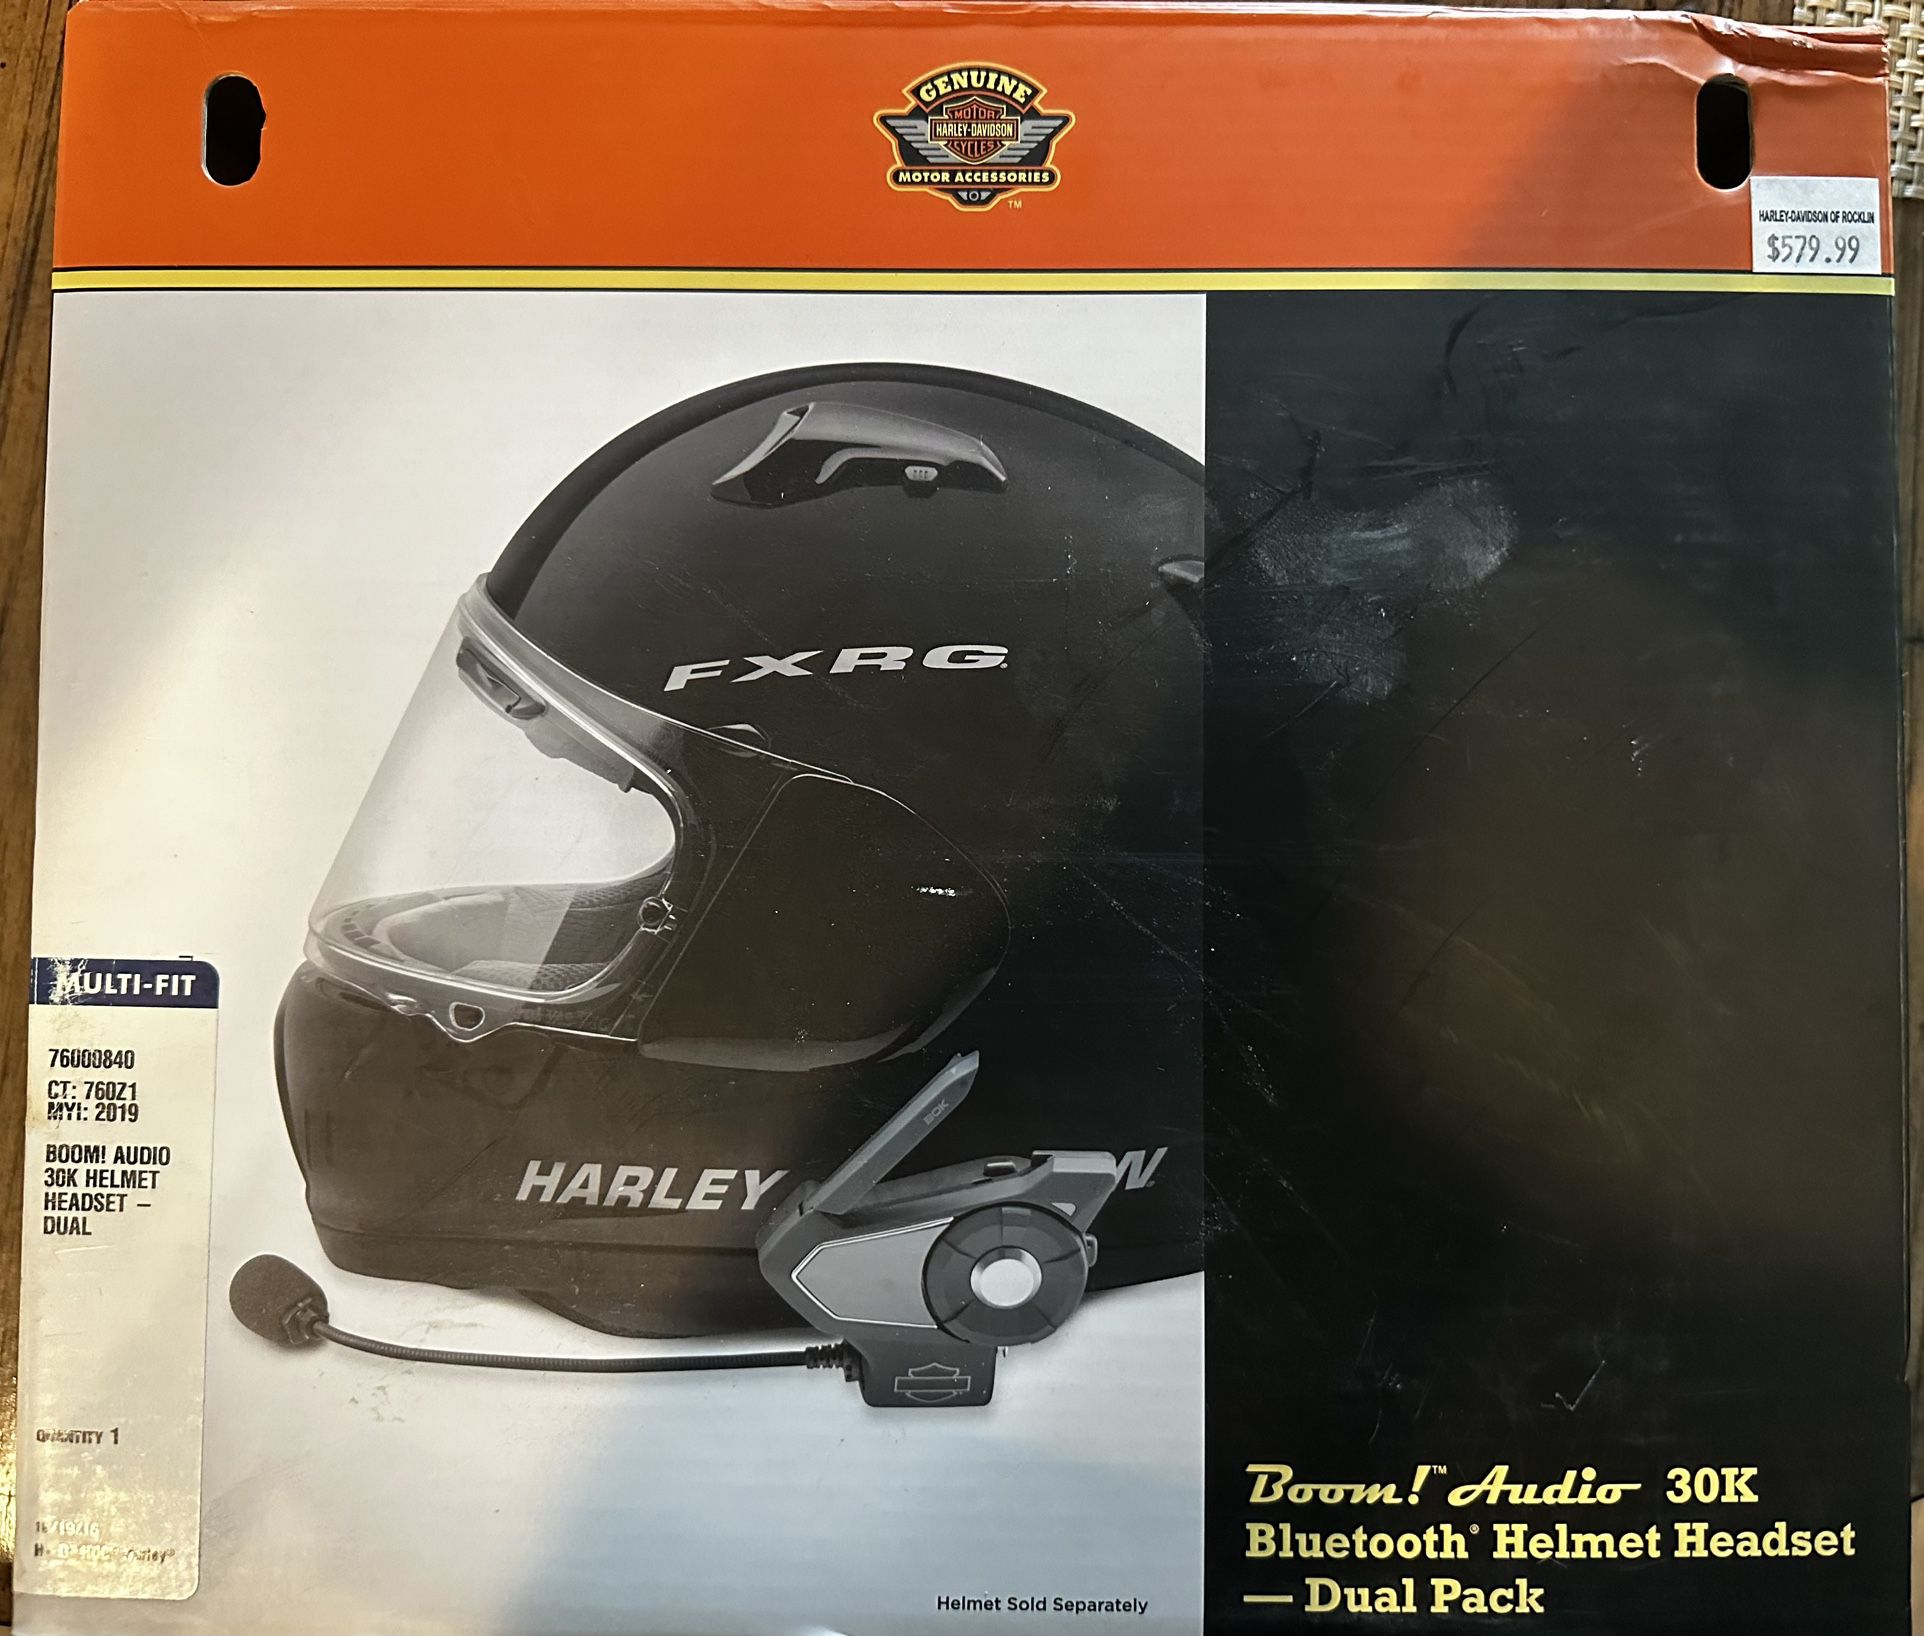 Harley Davidson Audio 30KWireless Headset 